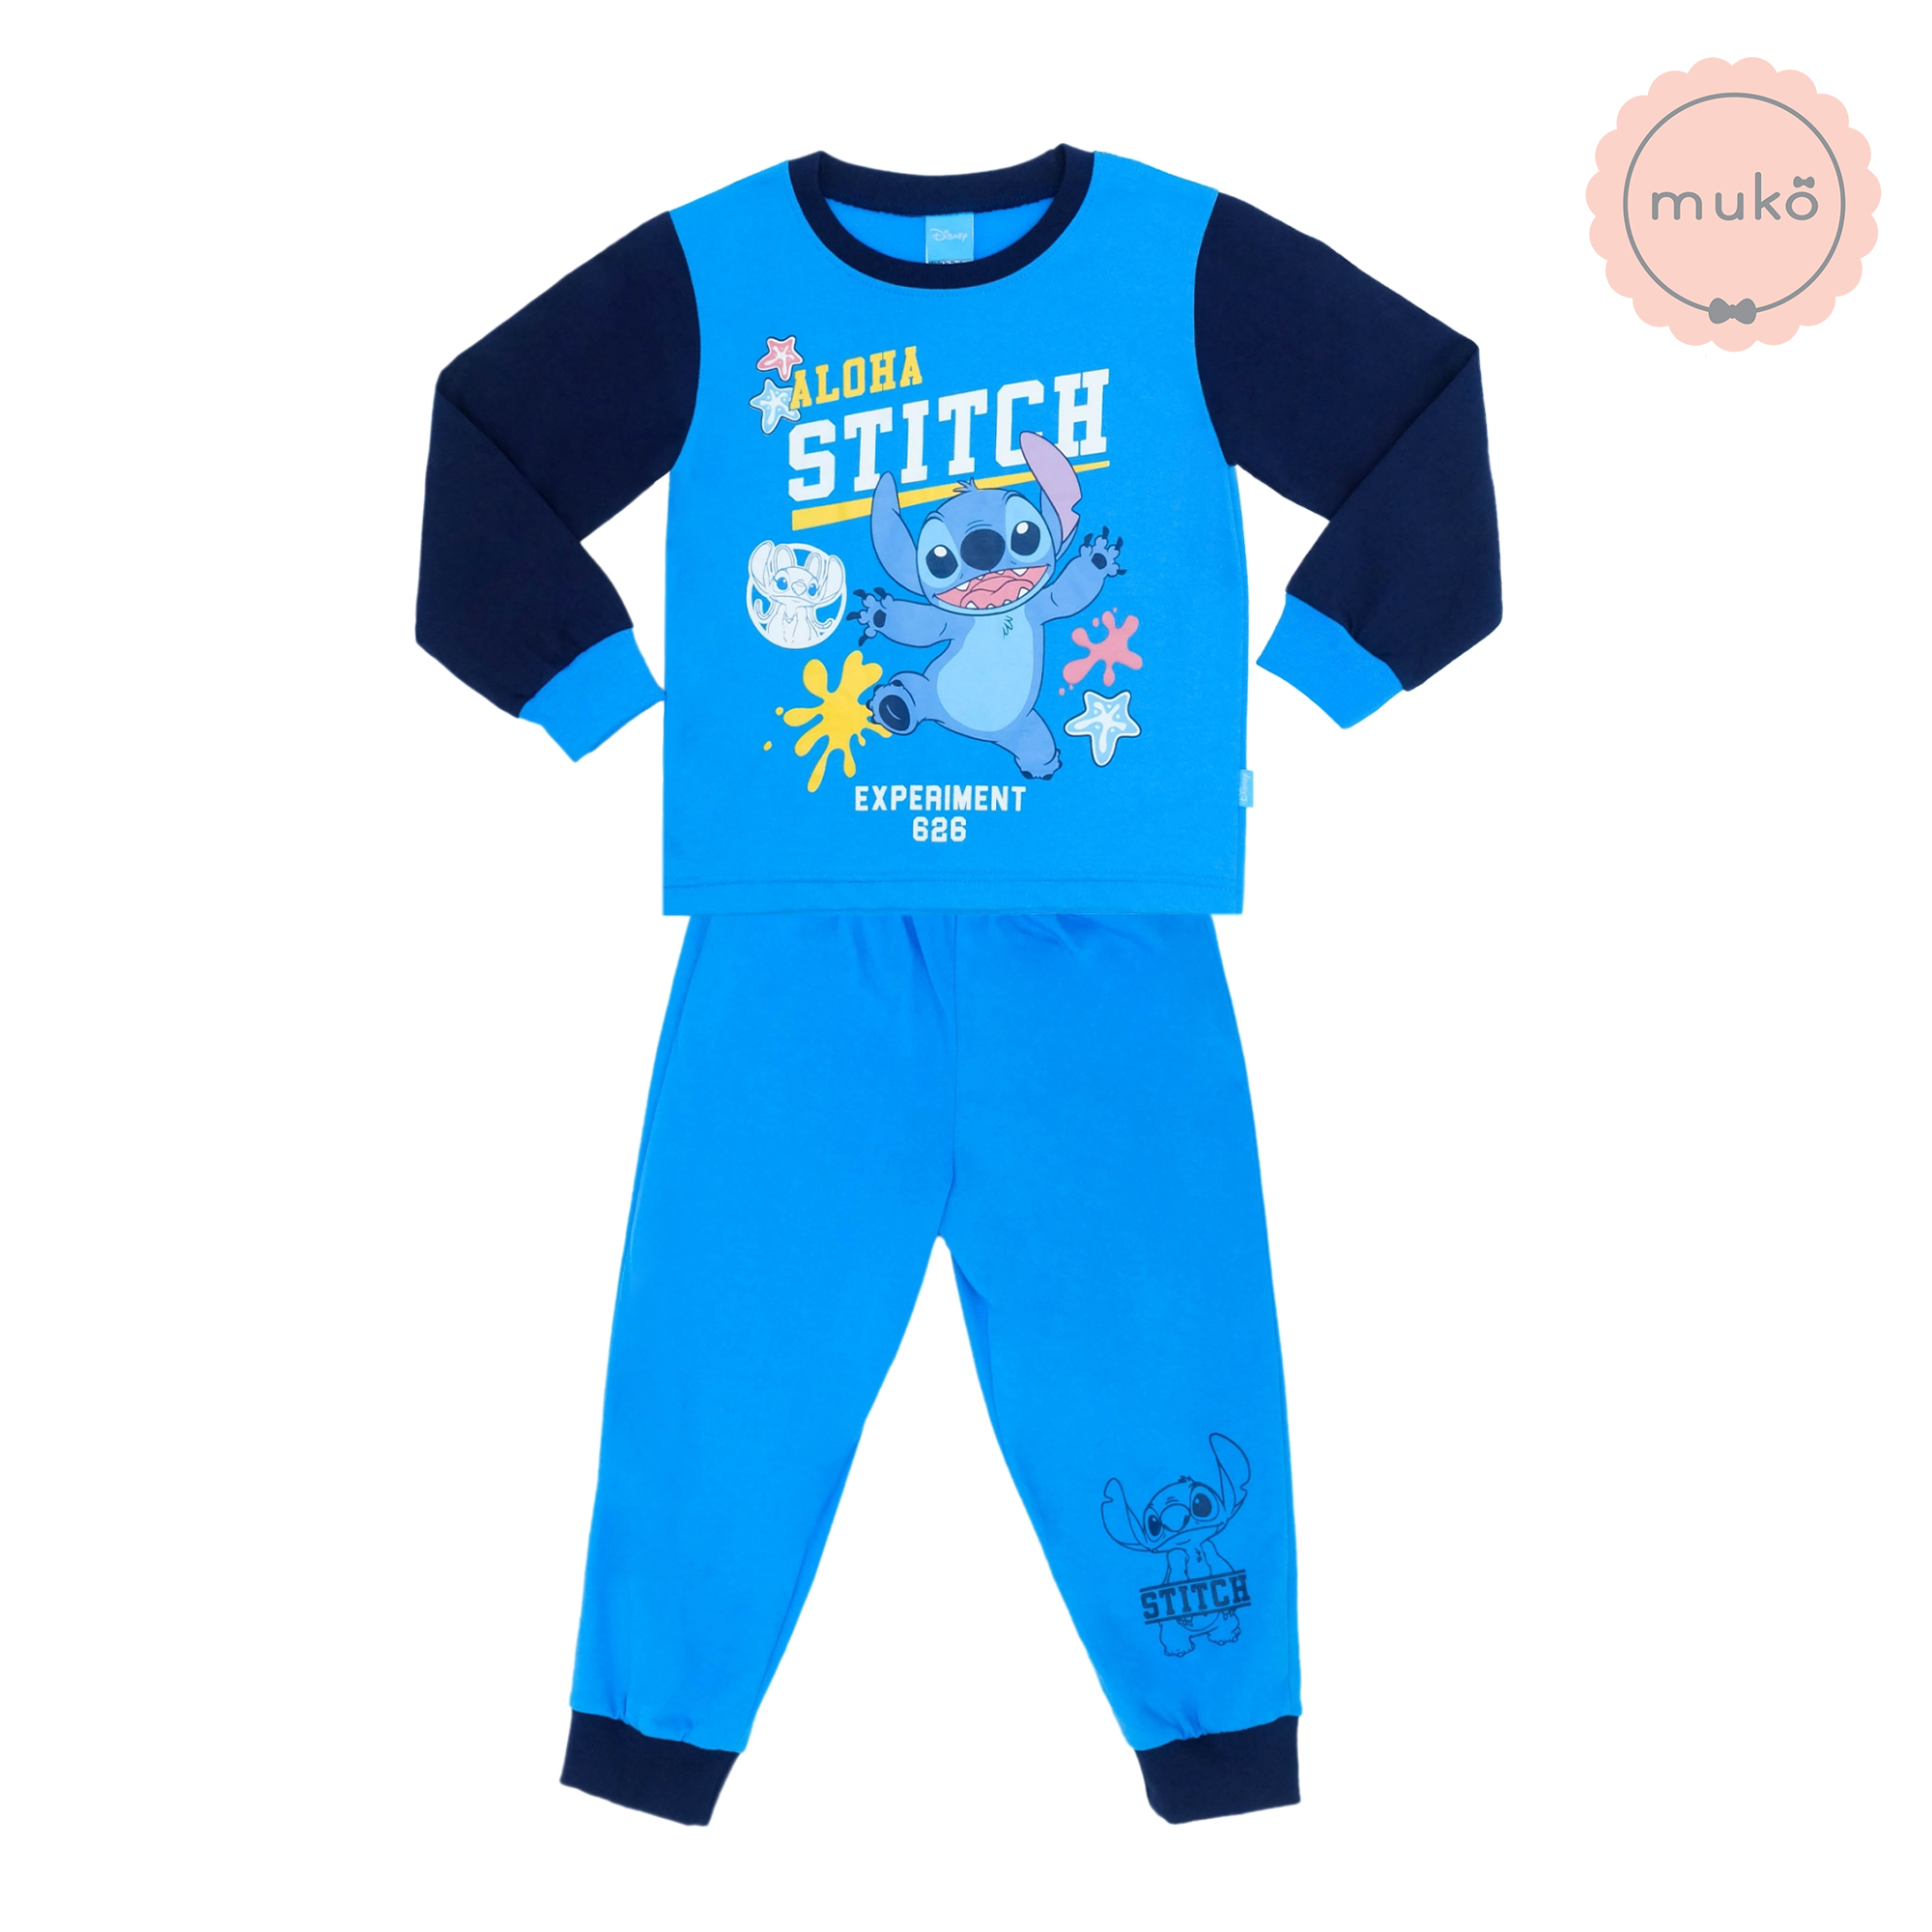 ชุดเด็ก 6 เดือน - 1 ขวบ แขนยาว-ขายาว (Size 1) DLS127-691-3-Blue 1 ลาย สติช Stitch สีฟ้า (แขนกรม)